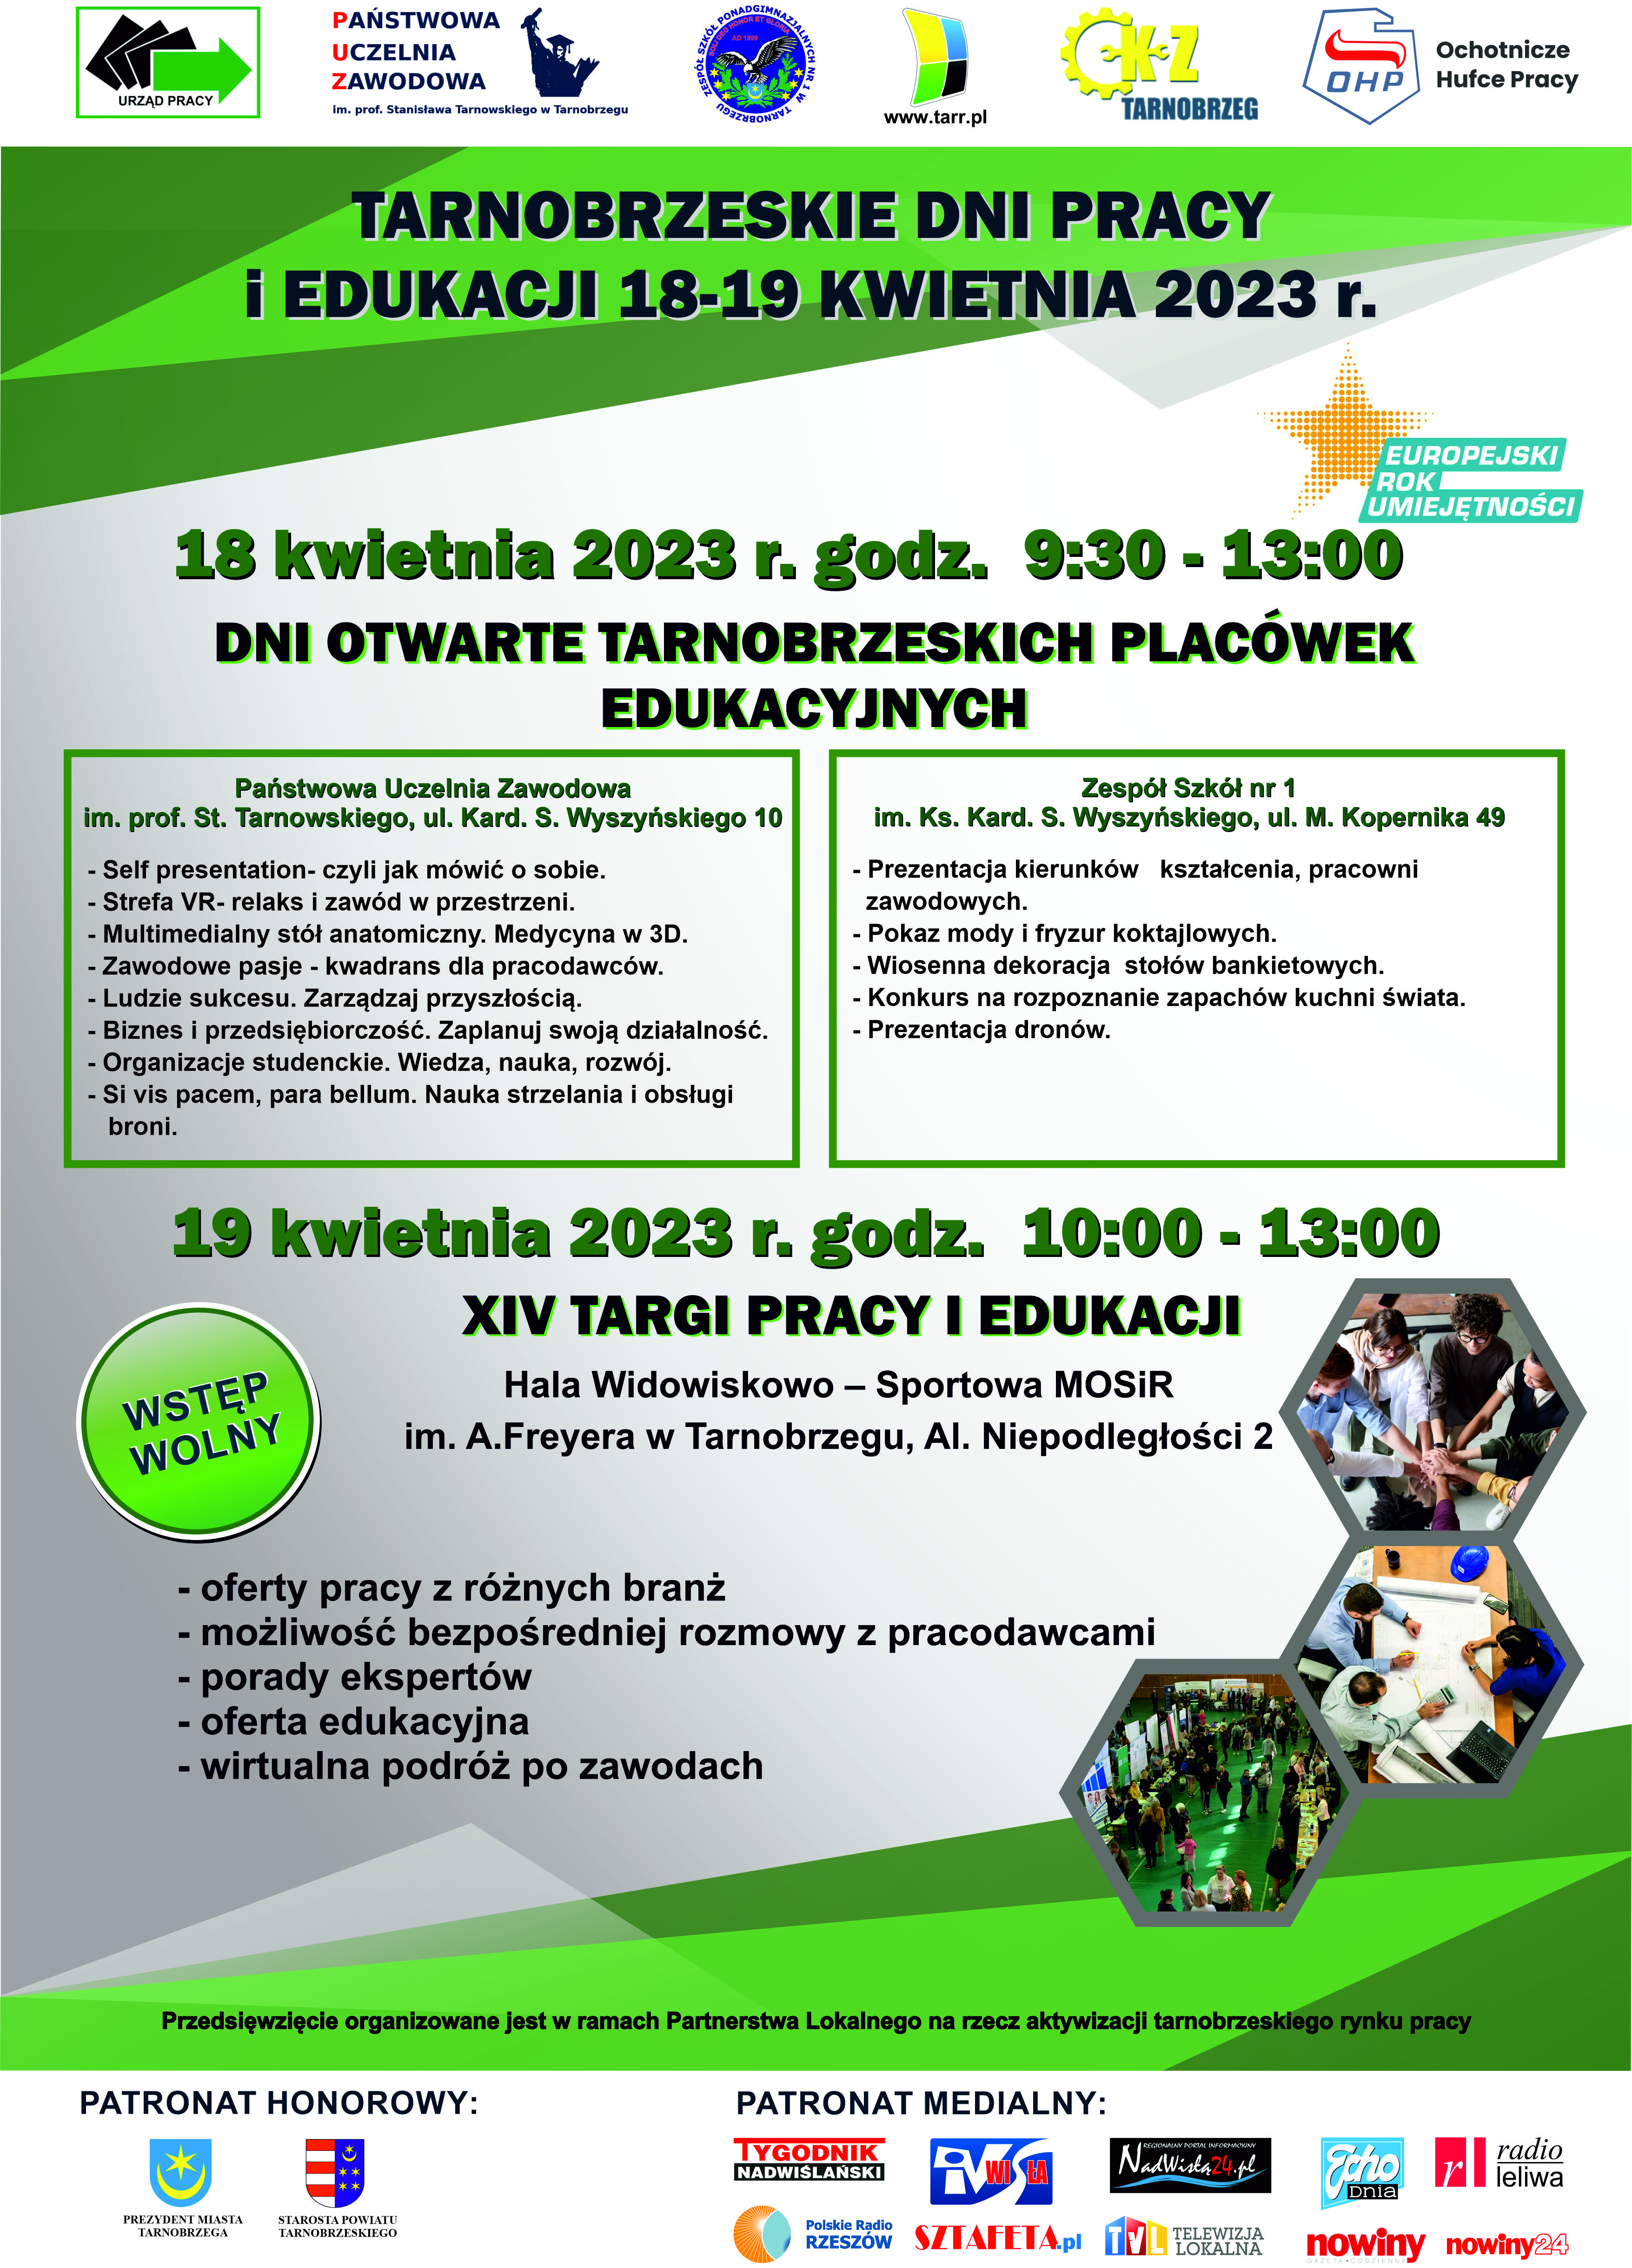 Powiatowy Urząd Pracy w Tarnobrzegu zaprasza na Tarnobrzeskie Dni Pracy i Edukacji 18-19 kwietnia 2023 r.